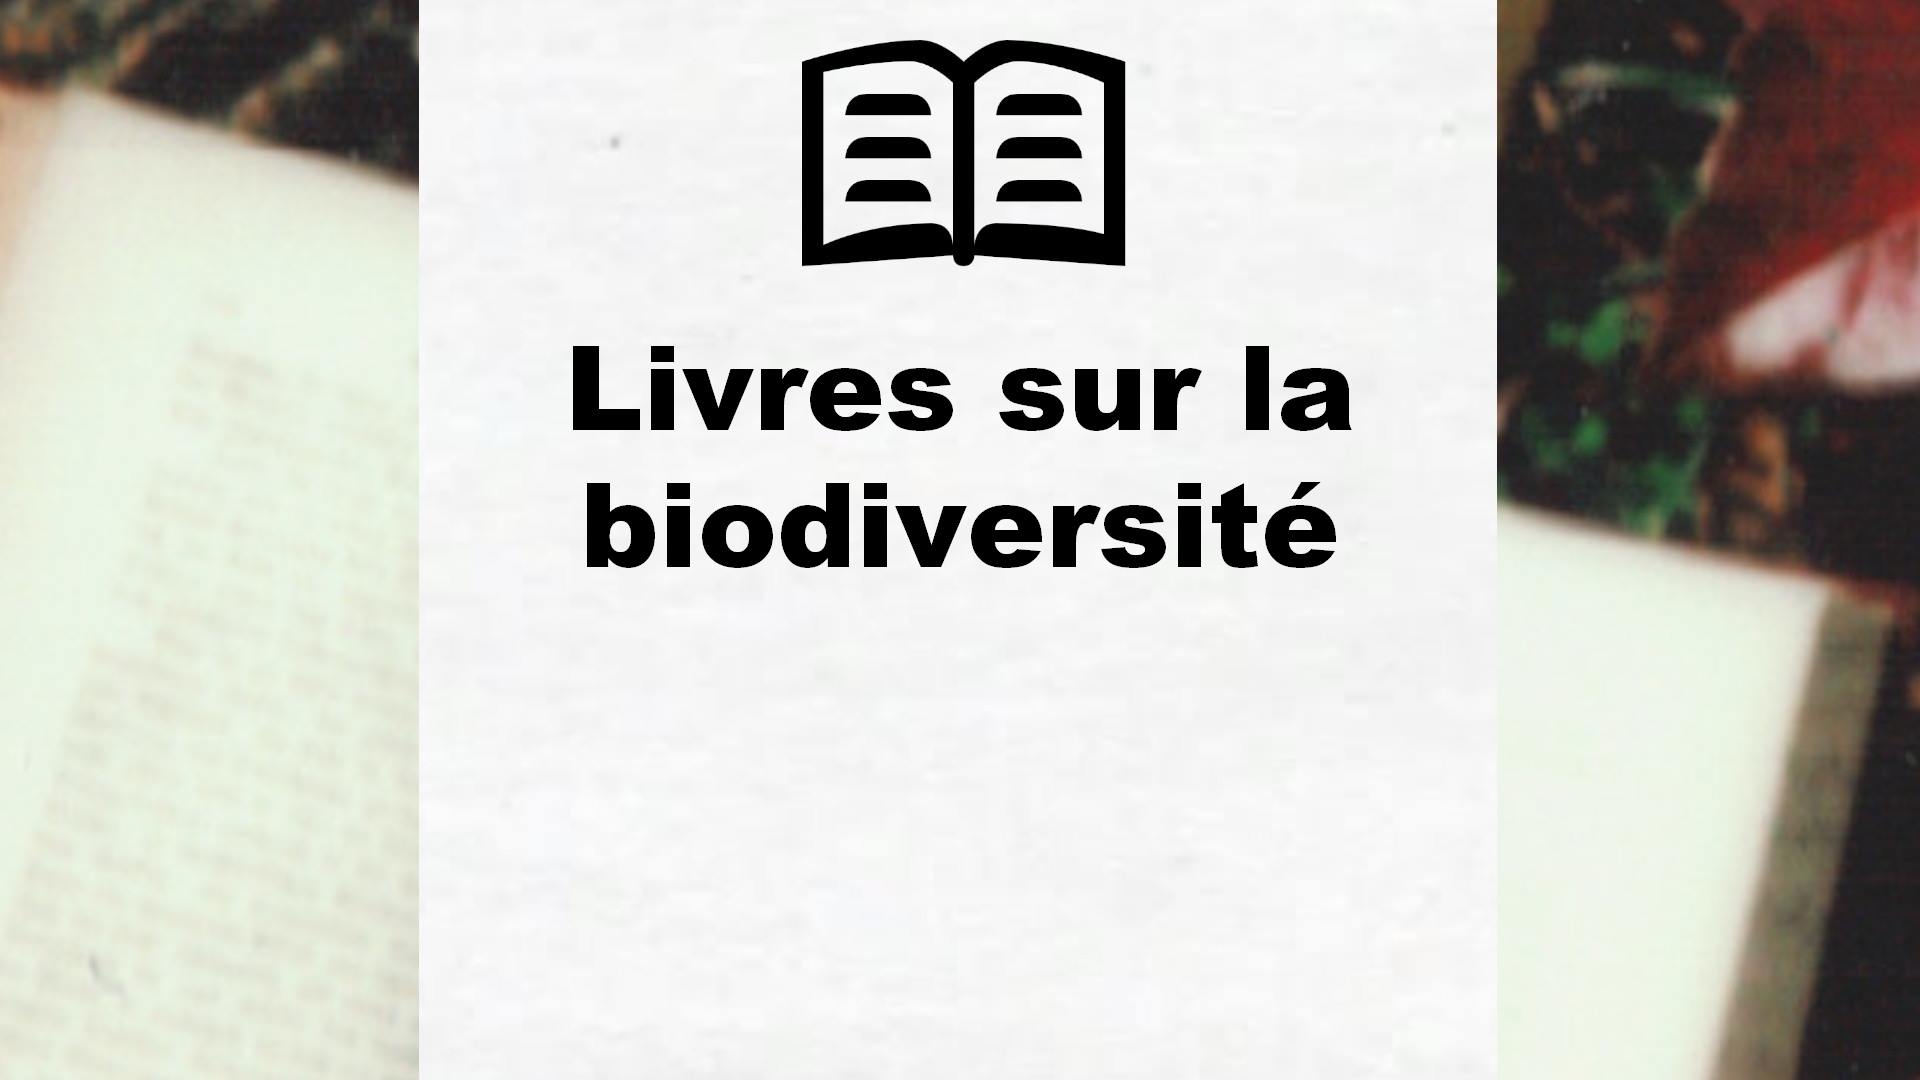 Livres sur la biodiversité